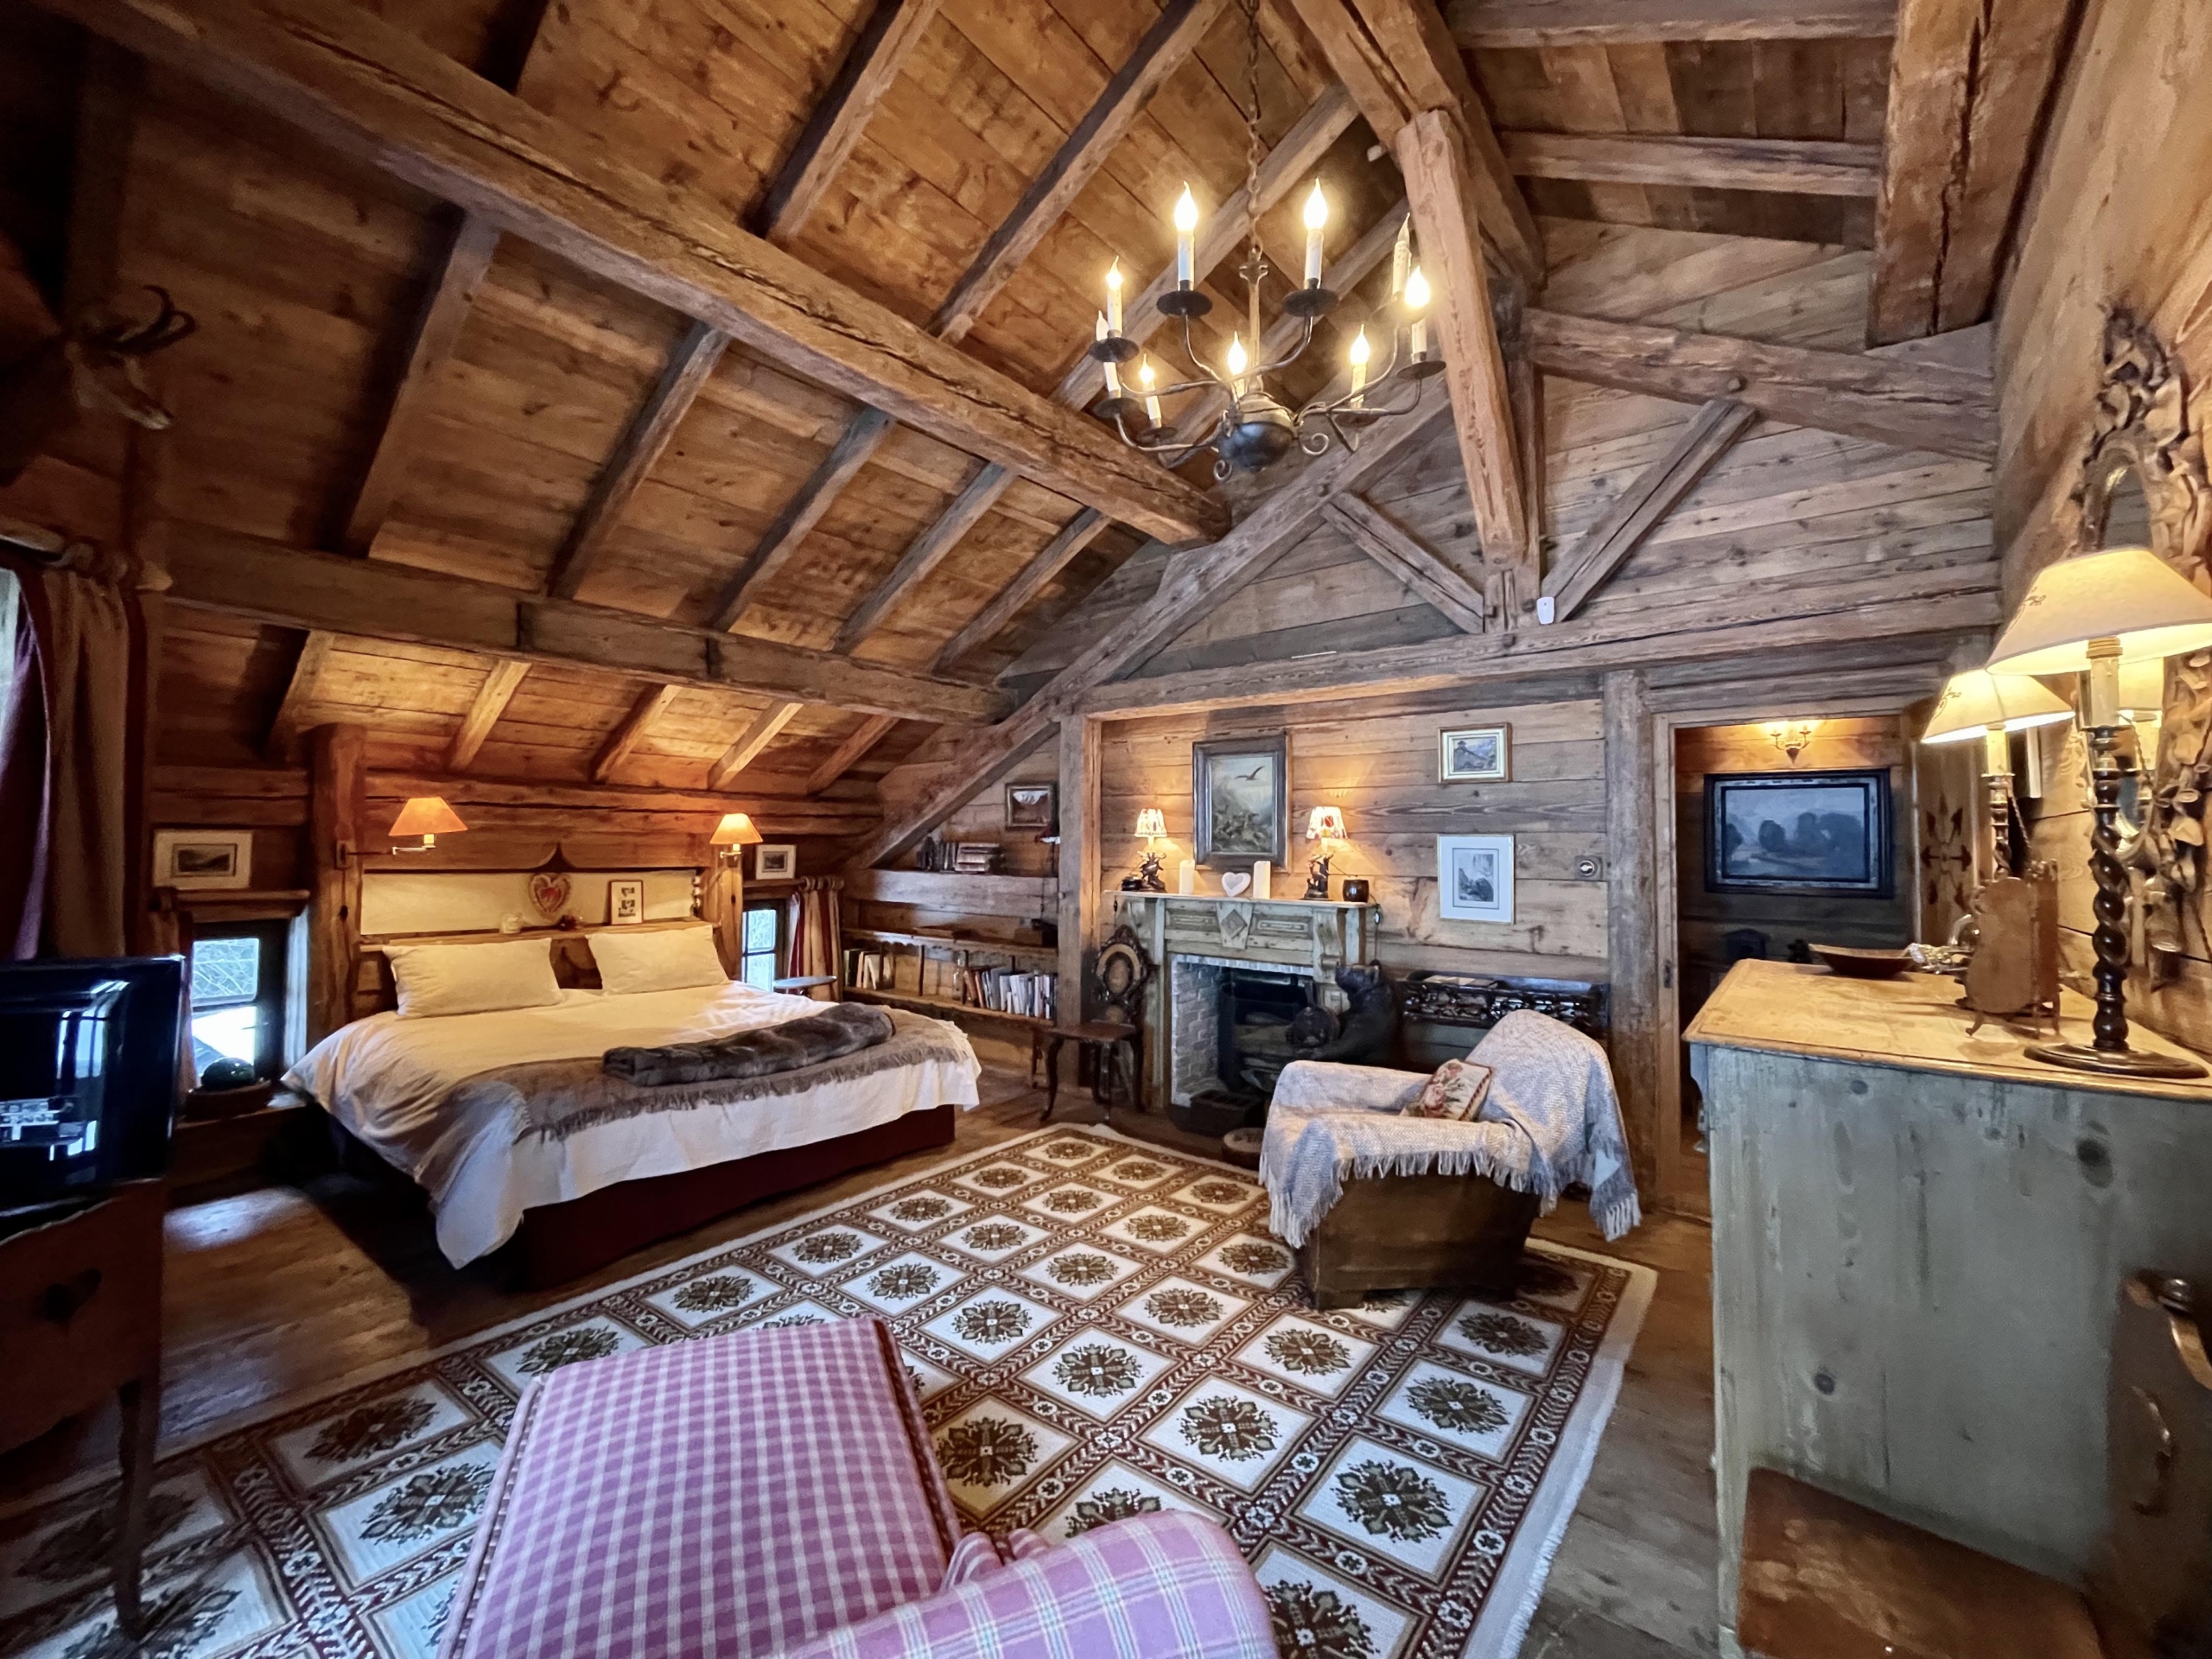 Phòng ngủ chính là một điển hình hoàn hảo cho kiểu phòng sang trọng dành cho những người trượt tuyết, có lò sưởi và đèn chùm lấp lánh, làm nổi bật sàn gỗ, tường và trần nhà có xà lộ ra ngoài. (Ảnh: Đăng dưới sự cho phép của Sotheby’s Concierge Auctions)